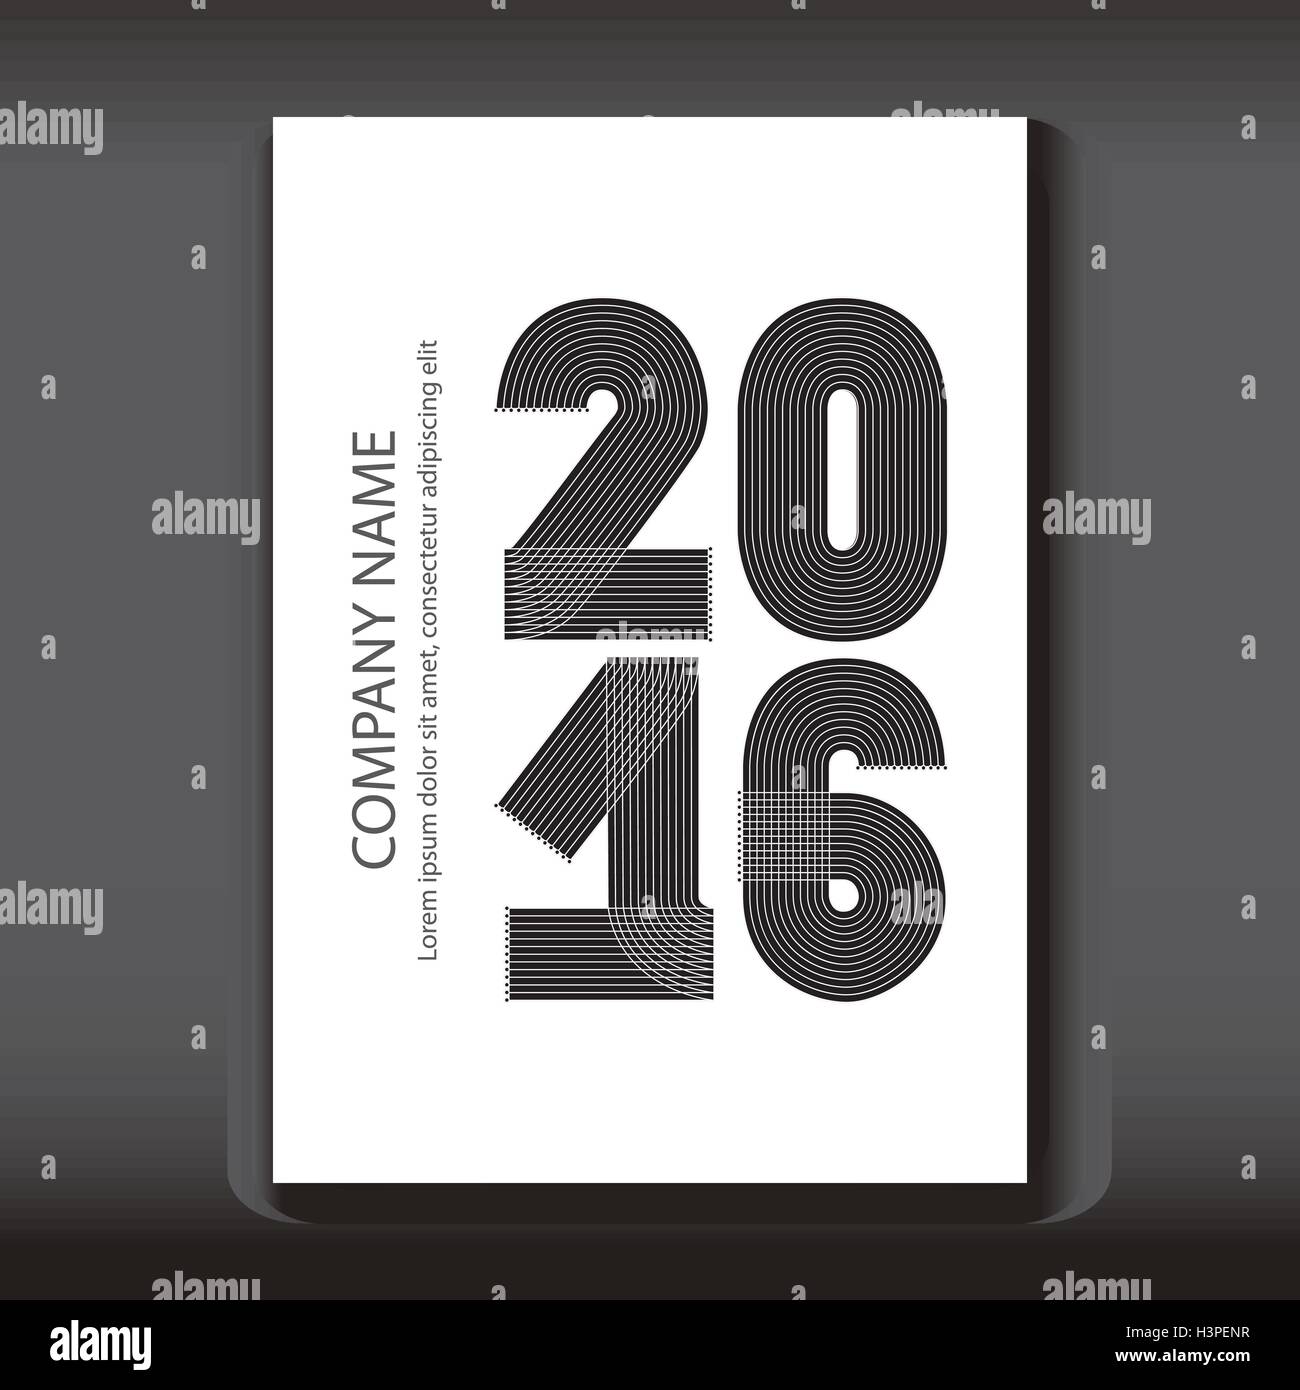 Rapport annuel 2016 chiffres de couverture, design moderne sur fond bleu, année 2016 en lignes fines rayures, minimaliste écrit des numéros Illustration de Vecteur